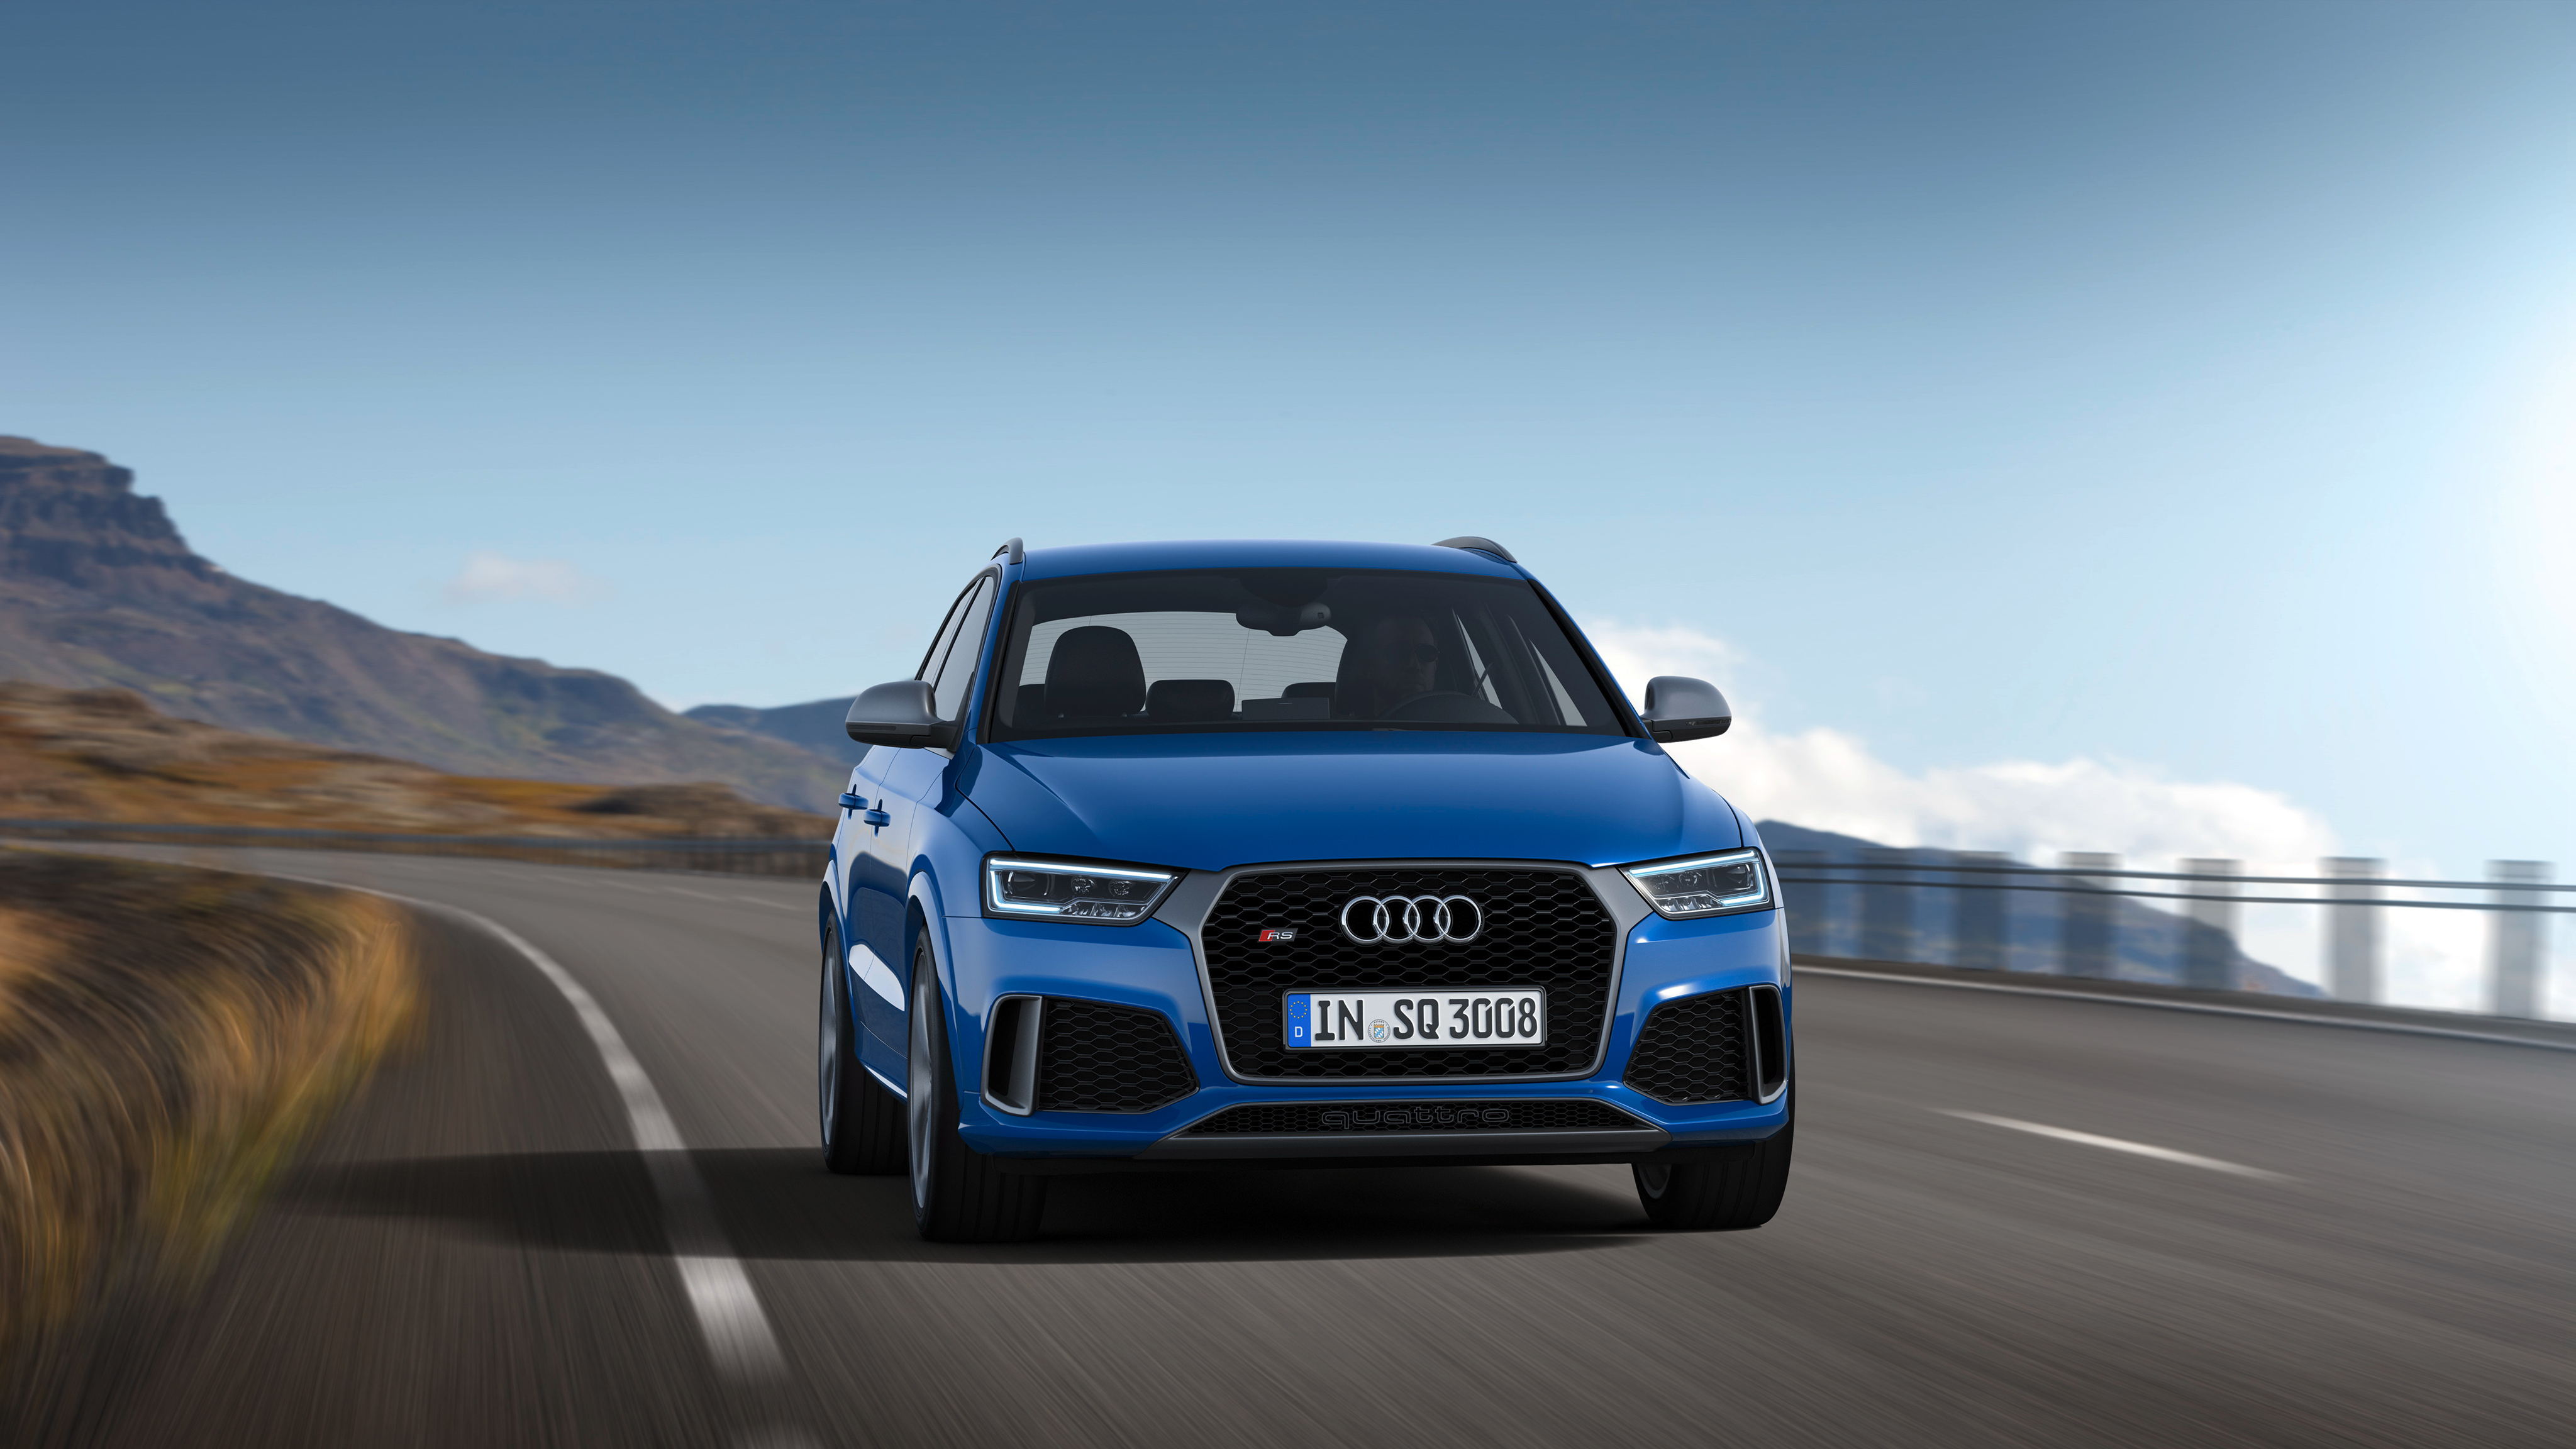 Audi Rs Q3 '2016 Wallpaper - Новый Audi Q3 Синего Цвета , HD Wallpaper & Backgrounds